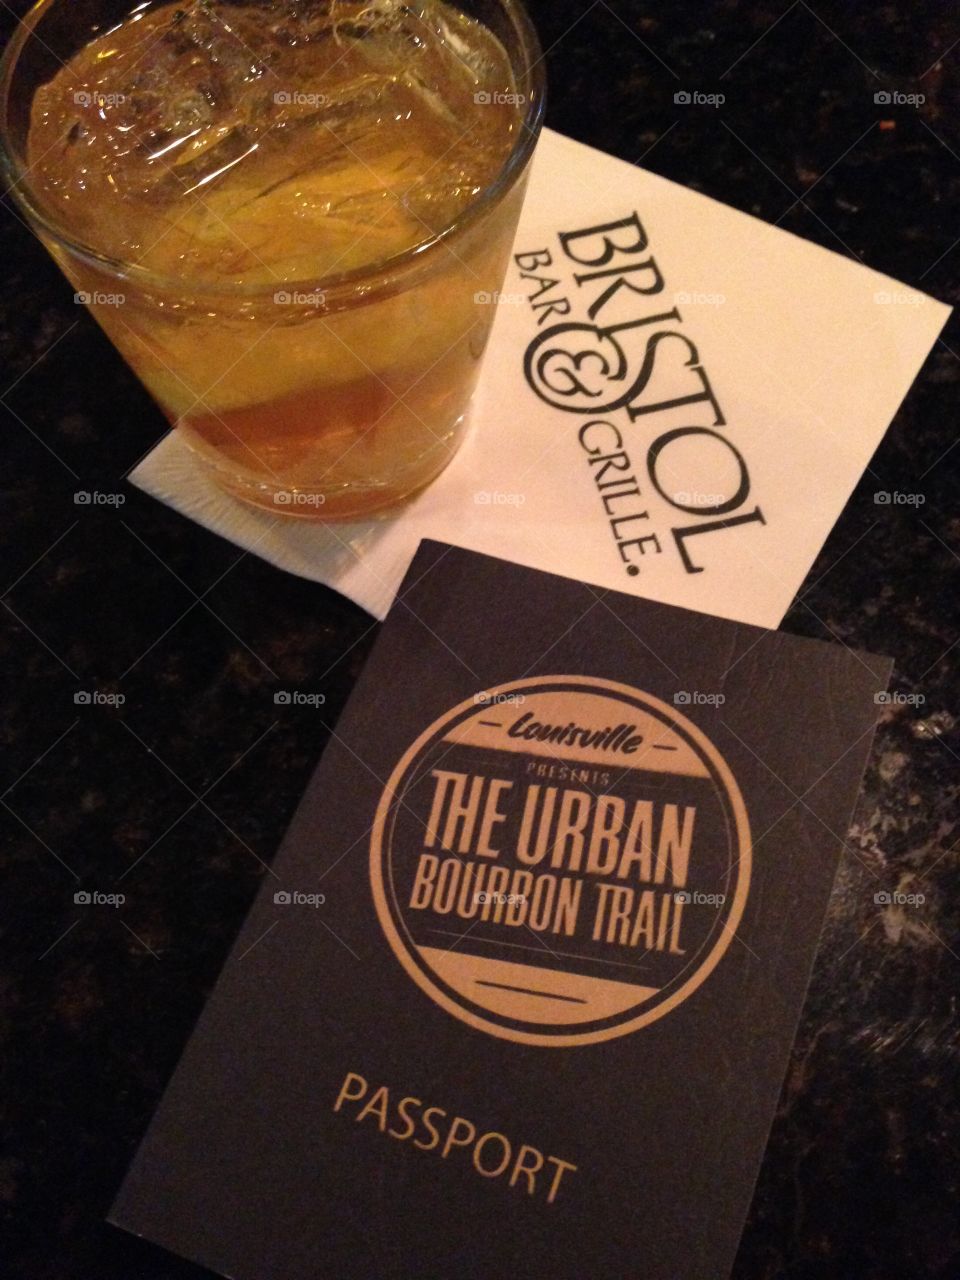 Urban bourbon trail